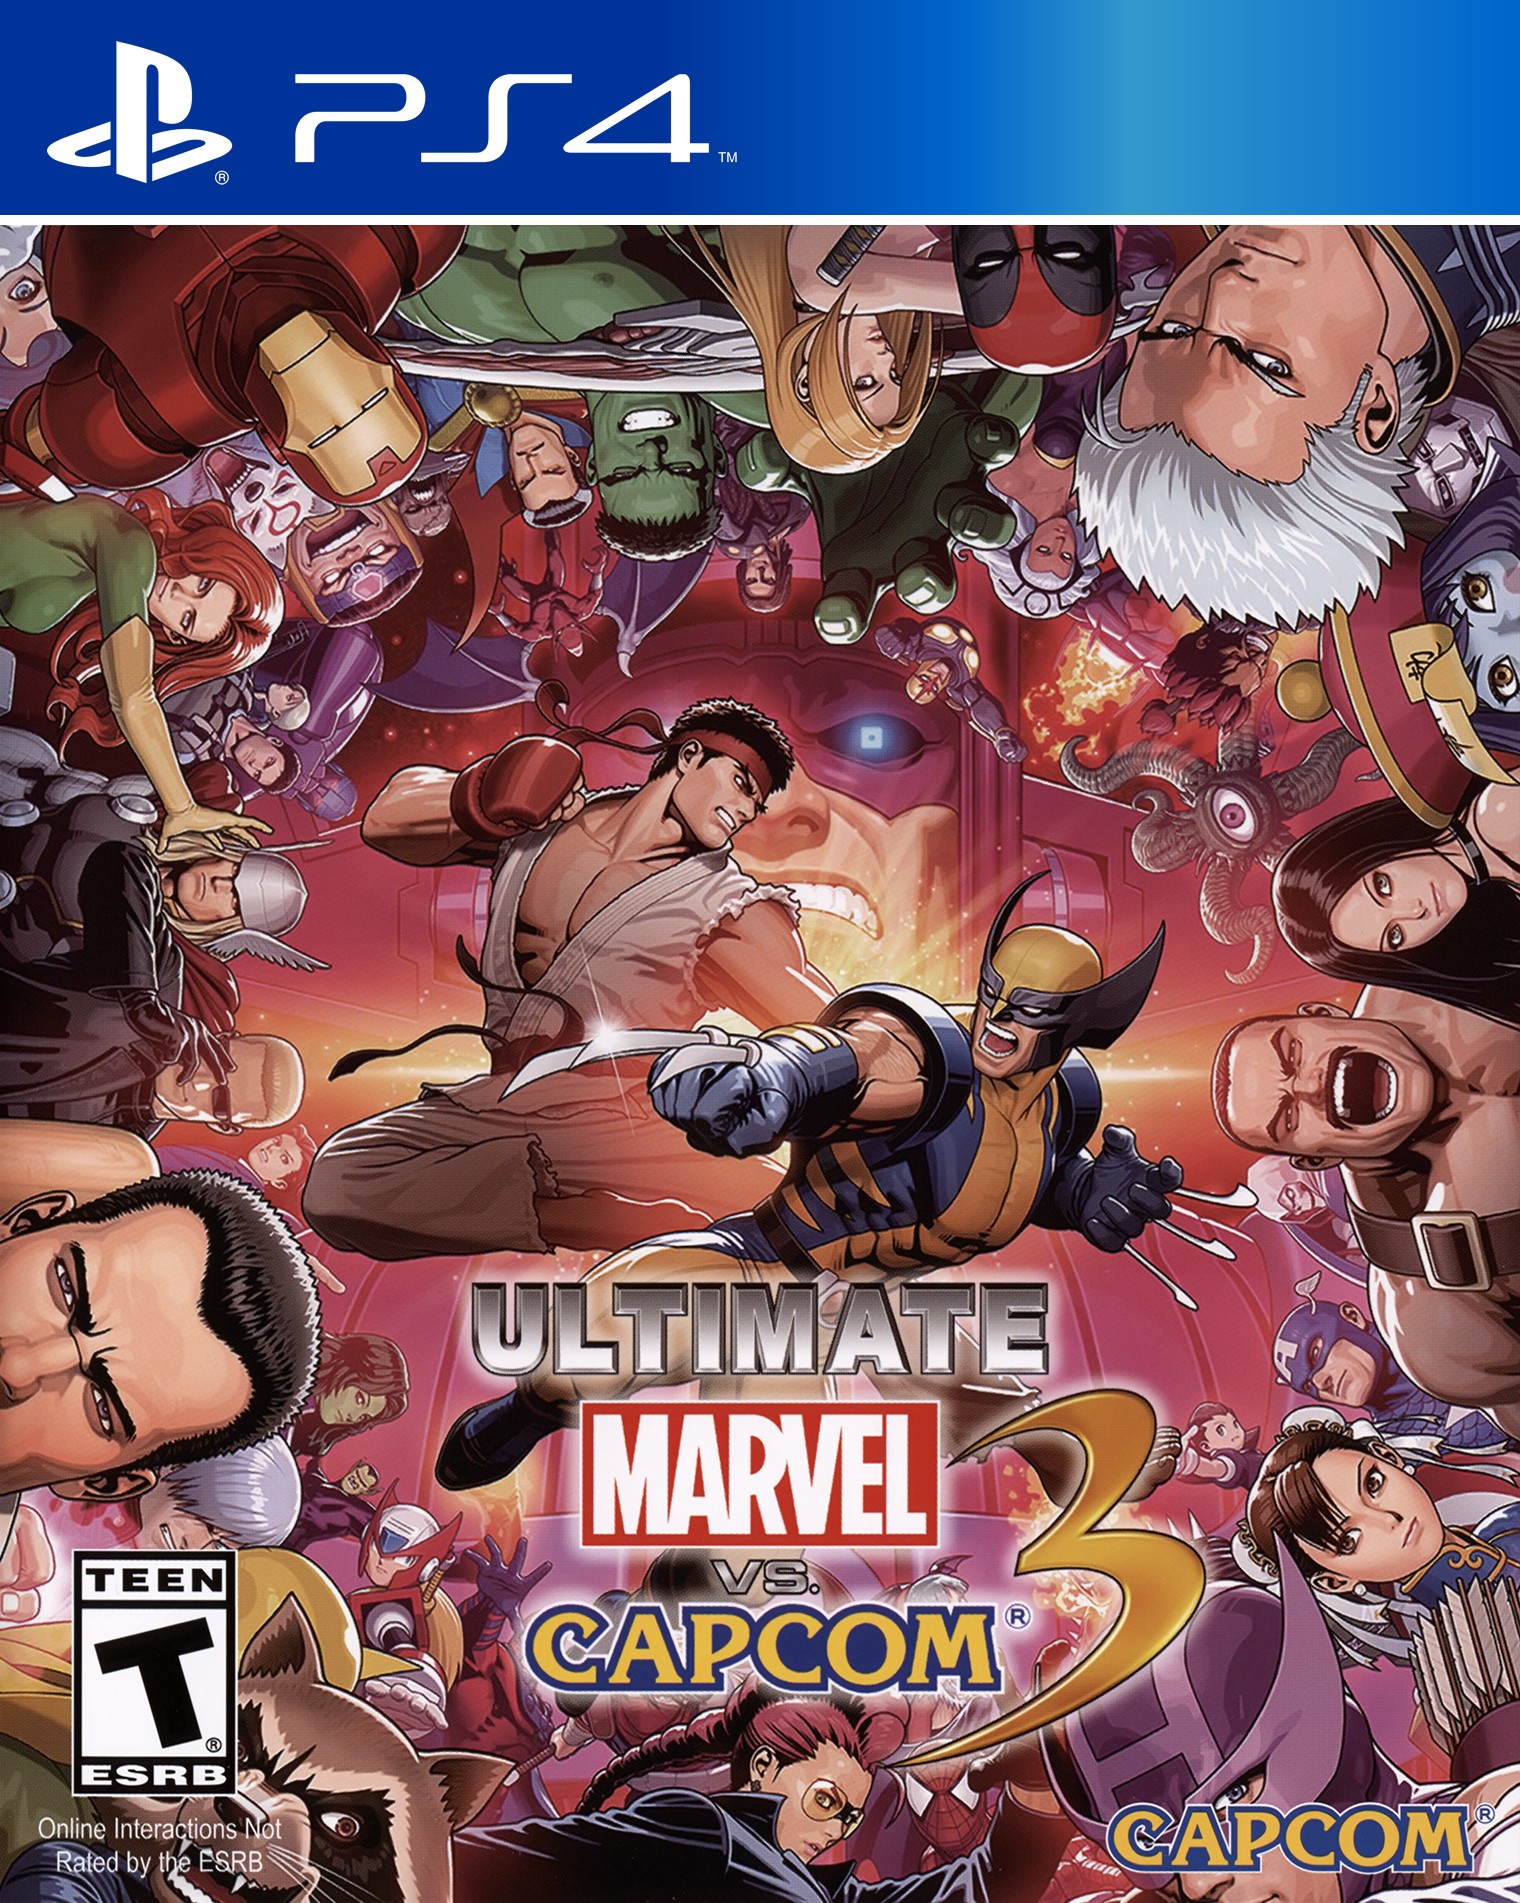 'Ultimate Marvel vs. Capcom 3'